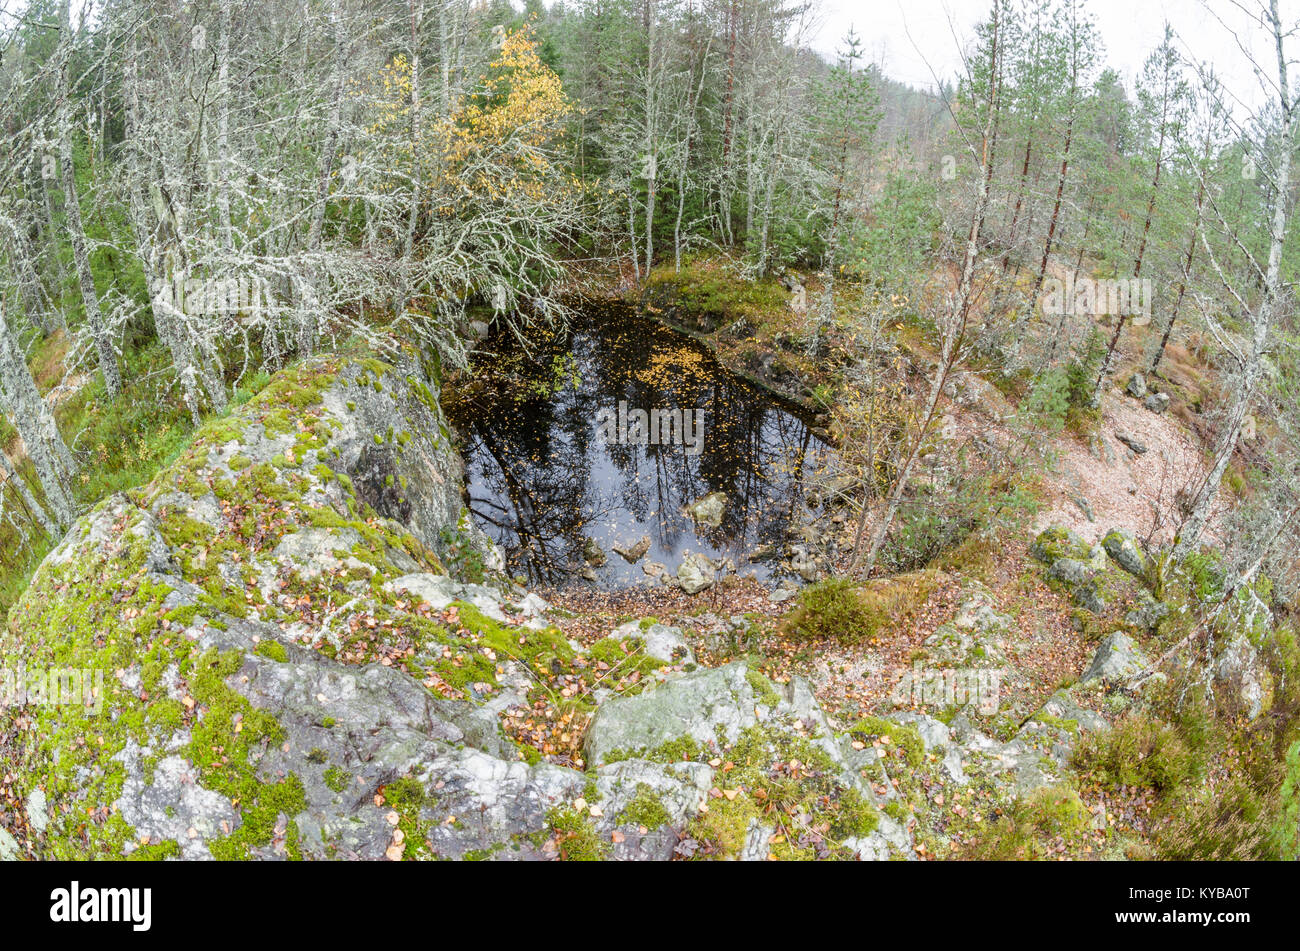 Landsverk 2, Evje Mineralsti. A finales de otoño no hay hojas y reliquias son visibles en el bosque, por lo que es la mejor época para visitar este lugar. Foto de stock